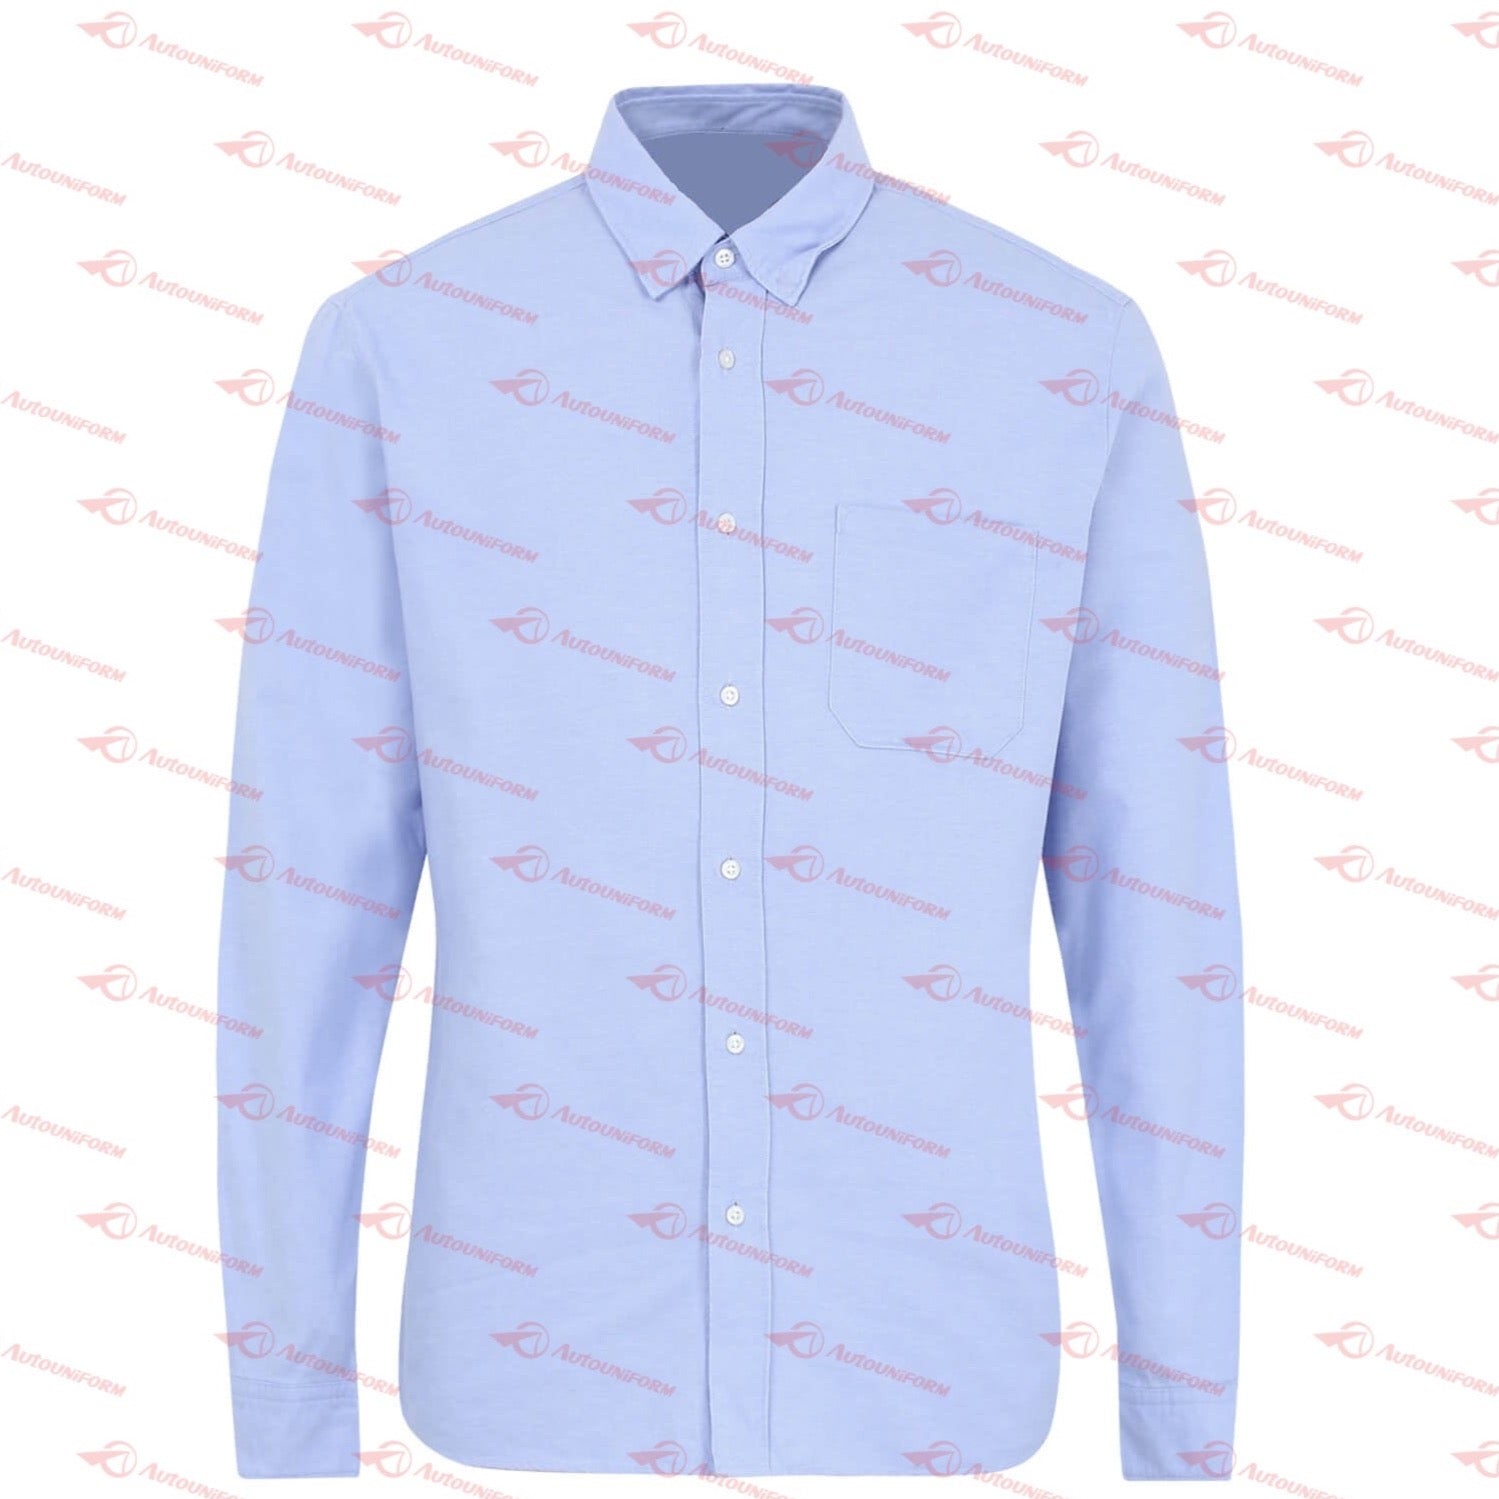 Prada Men's Embroidered Shirt (Sky Blue)